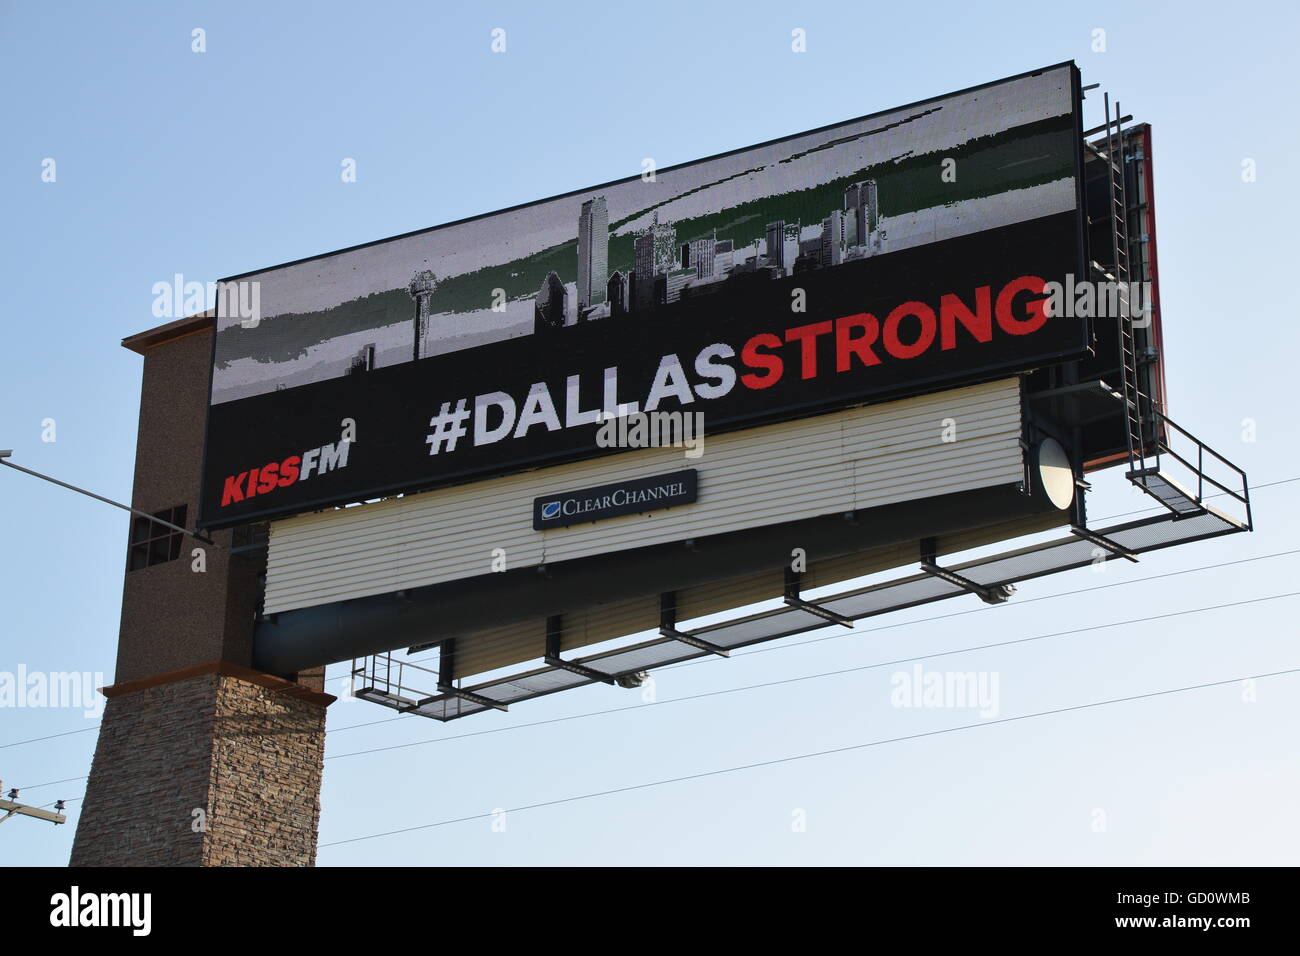 Dallas, Texas, USA. 10. Juli 2016. Geschäfte und Schulen zeigen Unterstützung für die gefallenen Dallas Polizisten durch Senkung ihrer Flagge um die Hälfte Mitarbeiter. Bildnachweis: Hum Bilder/Alamy Live-Nachrichten Stockfoto